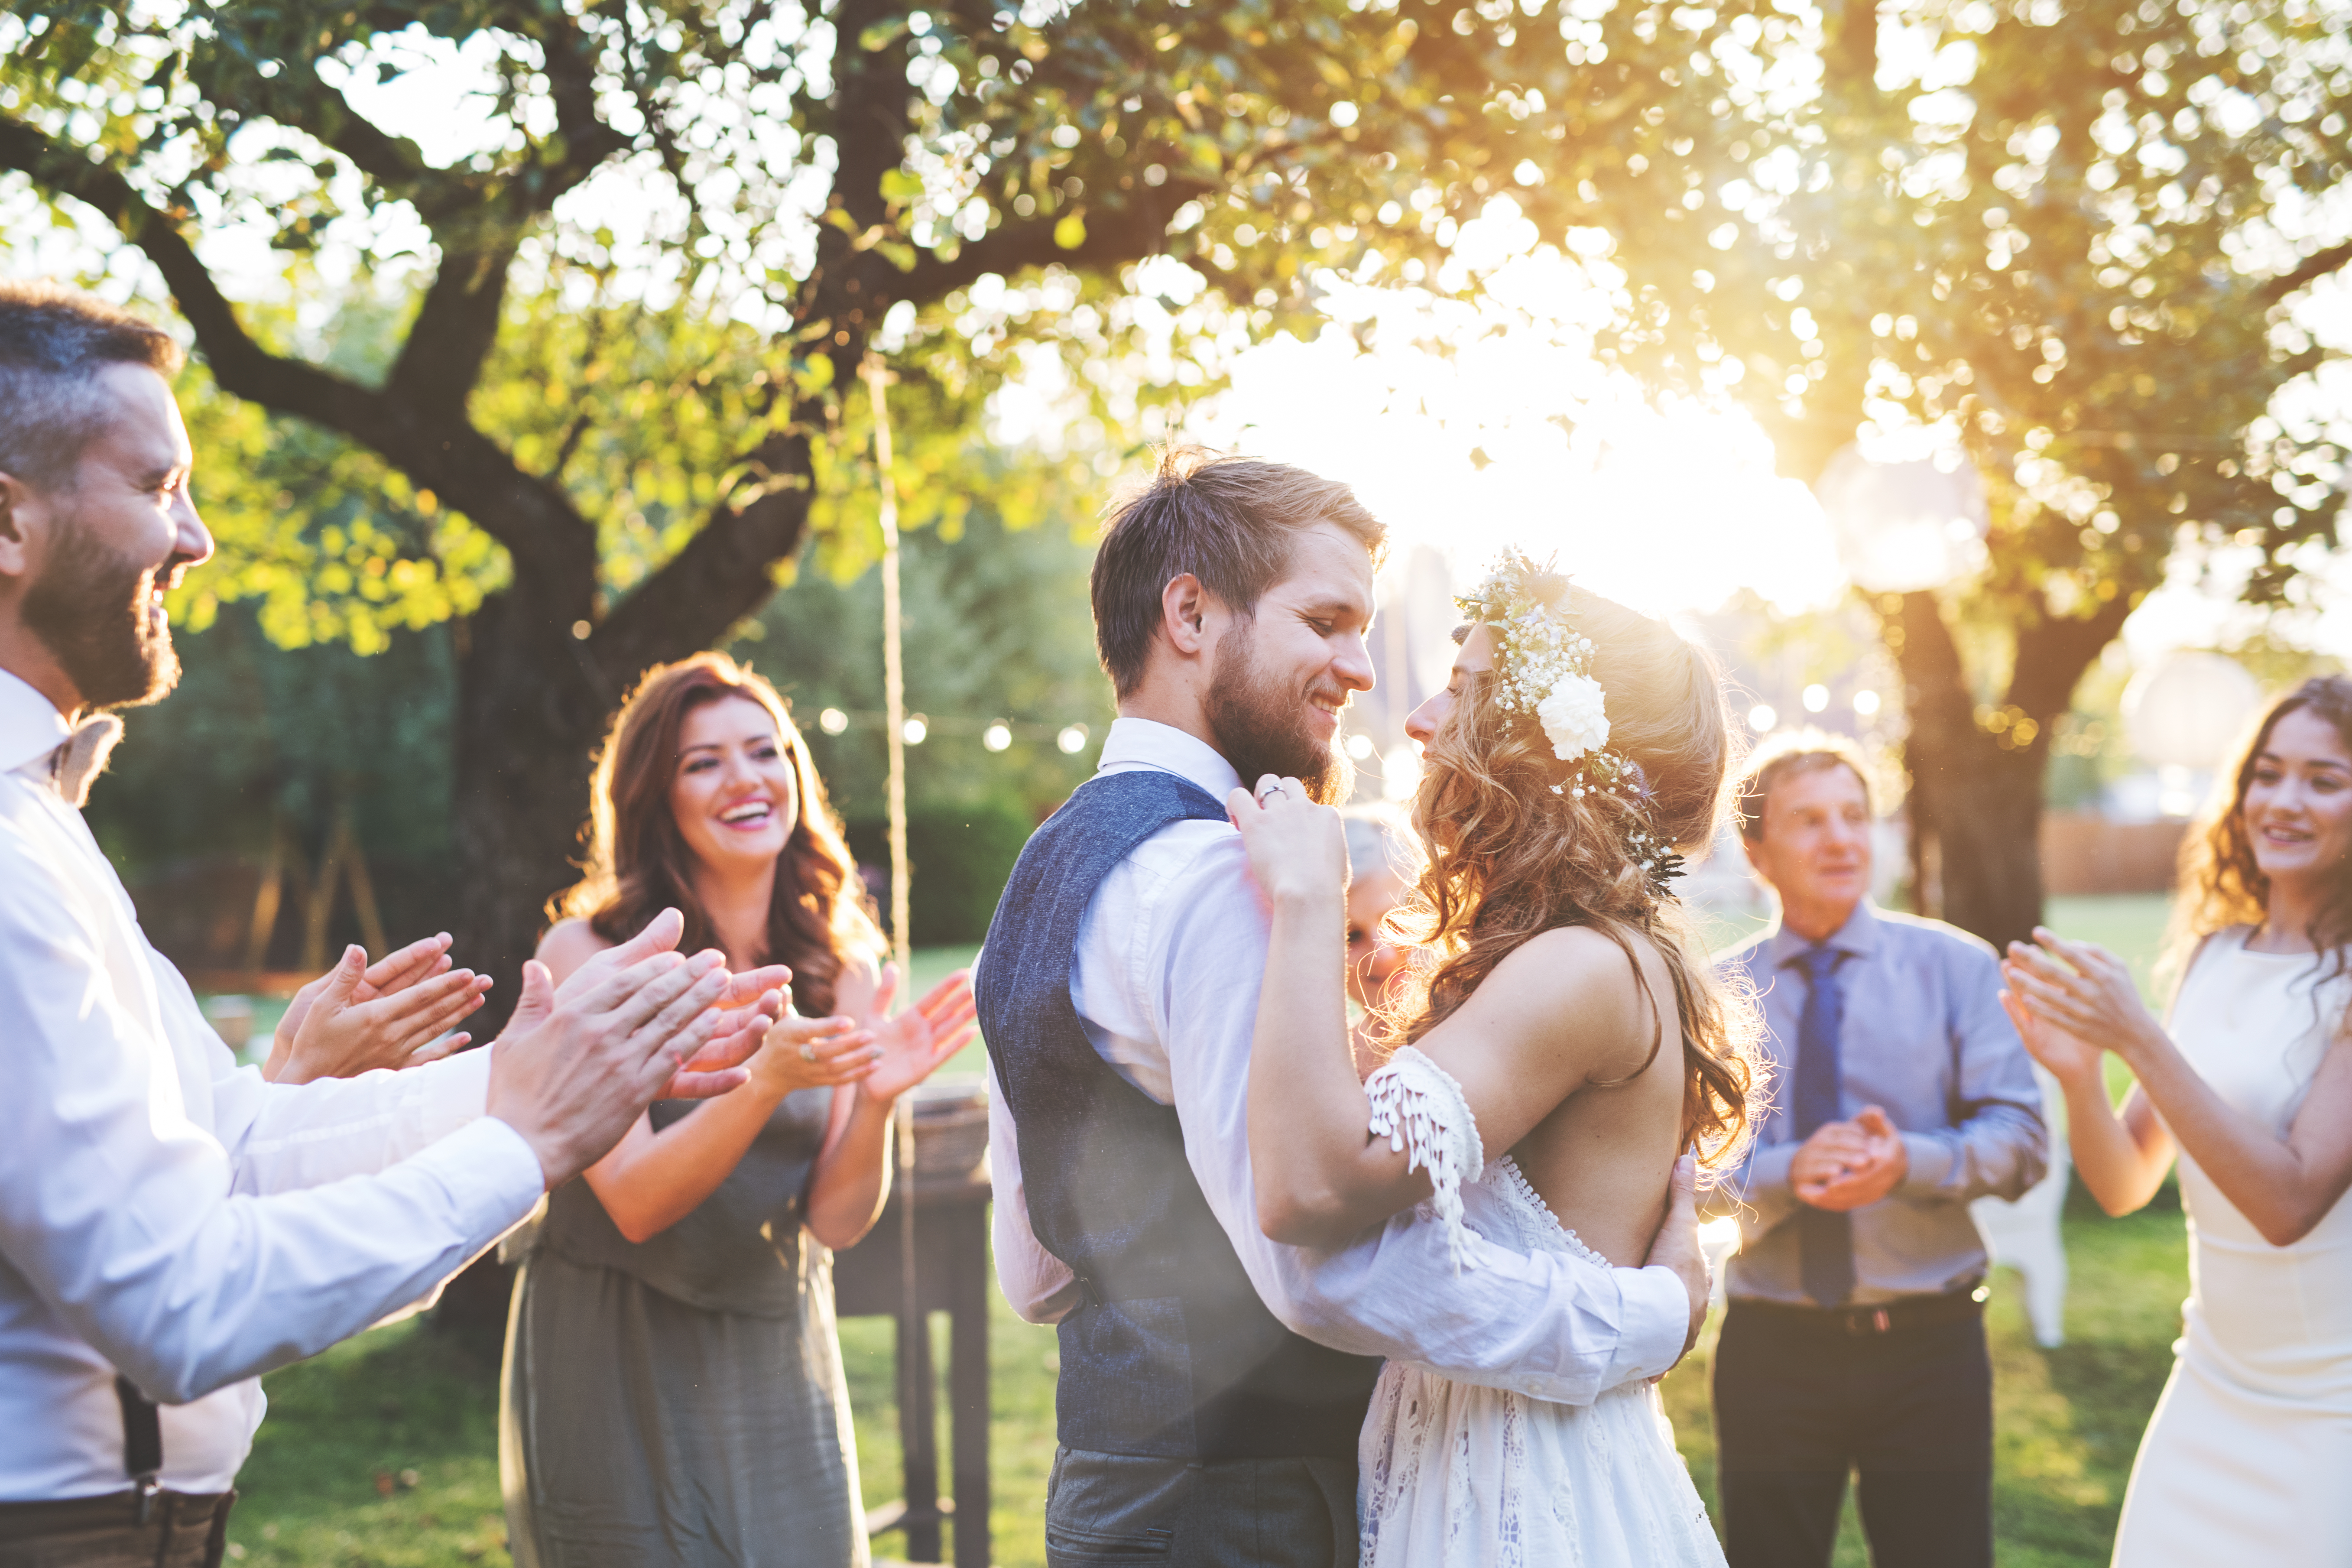 Les mariés dansent lors de leur réception de mariage | Source : Shutterstock